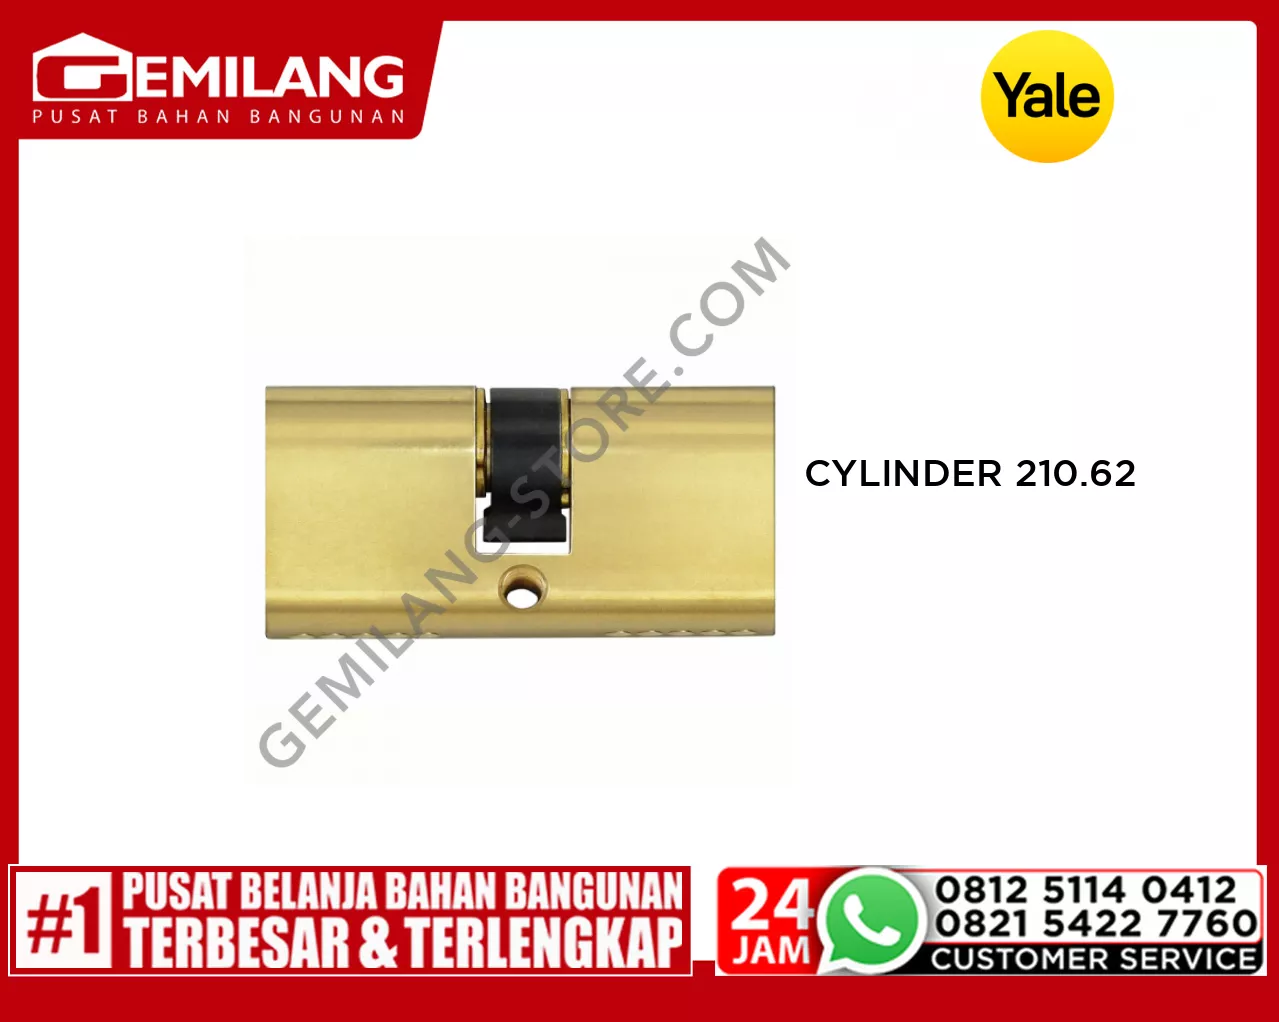 YALE CYLINDER 210.62